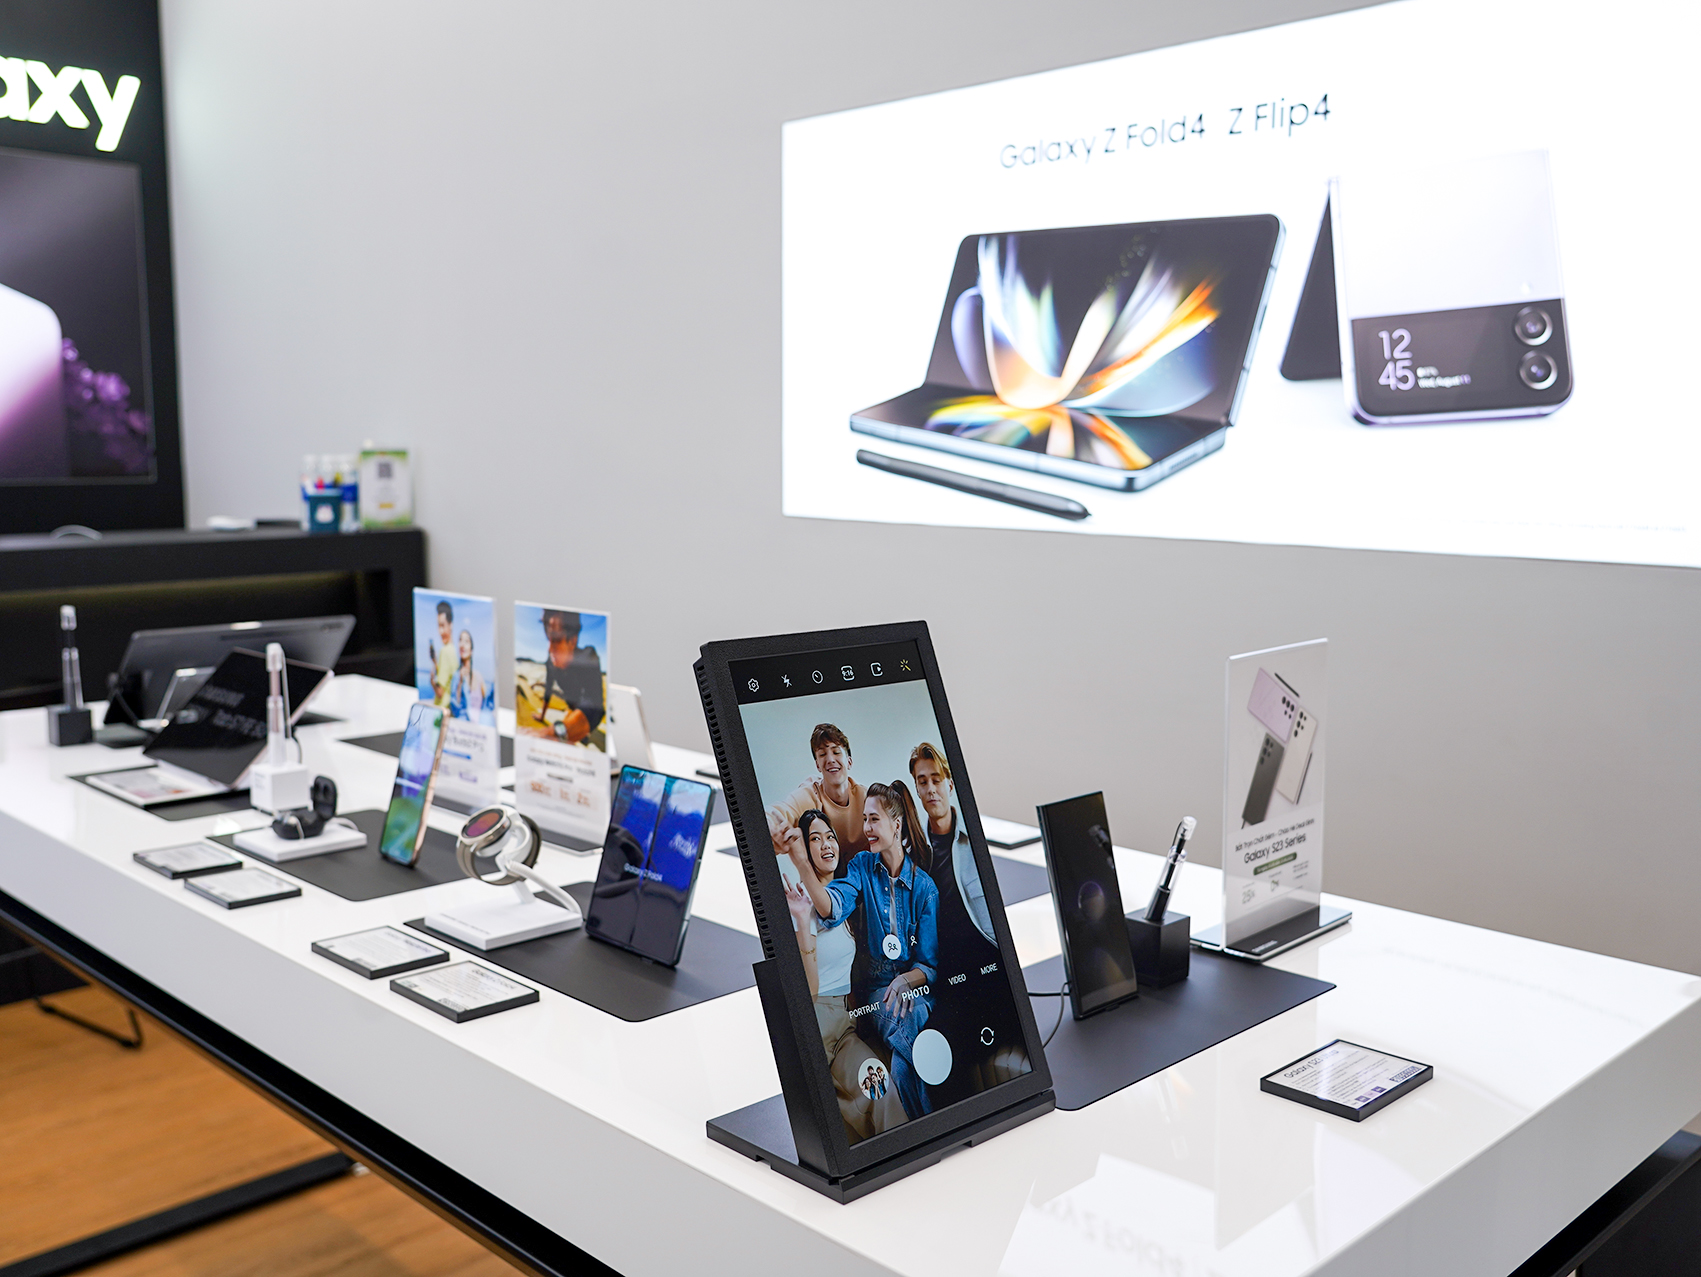 MT Smart kết hợp cùng Samsung khai trương cửa hàng trải nghiệm cao cấp - Ảnh 6.